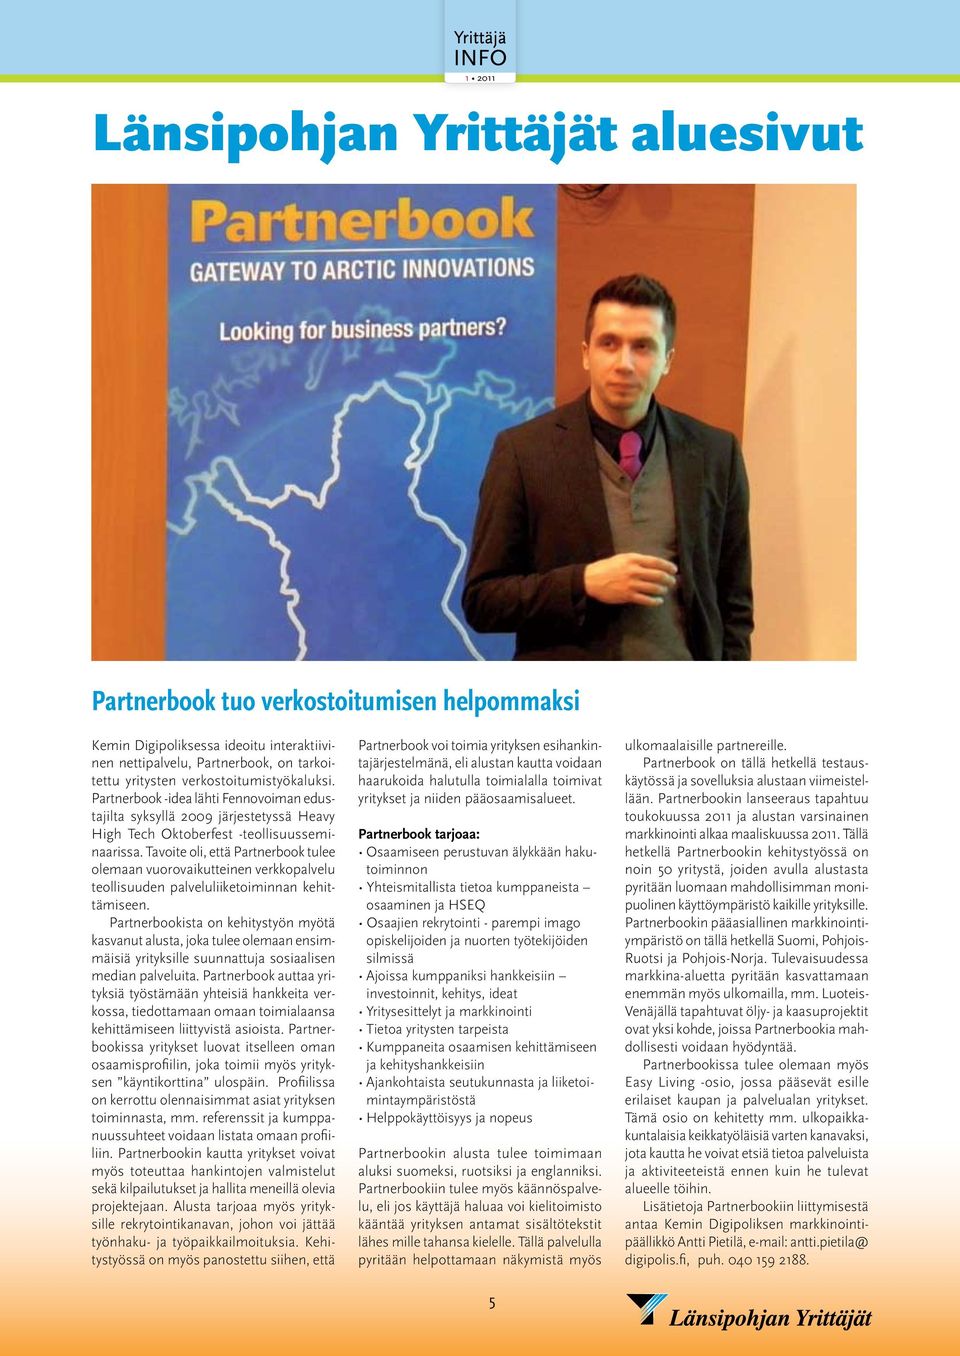 Tavoite oli, että Partnerbook tulee olemaan vuorovaikutteinen verkkopalvelu teollisuuden palveluliiketoiminnan kehittämiseen.